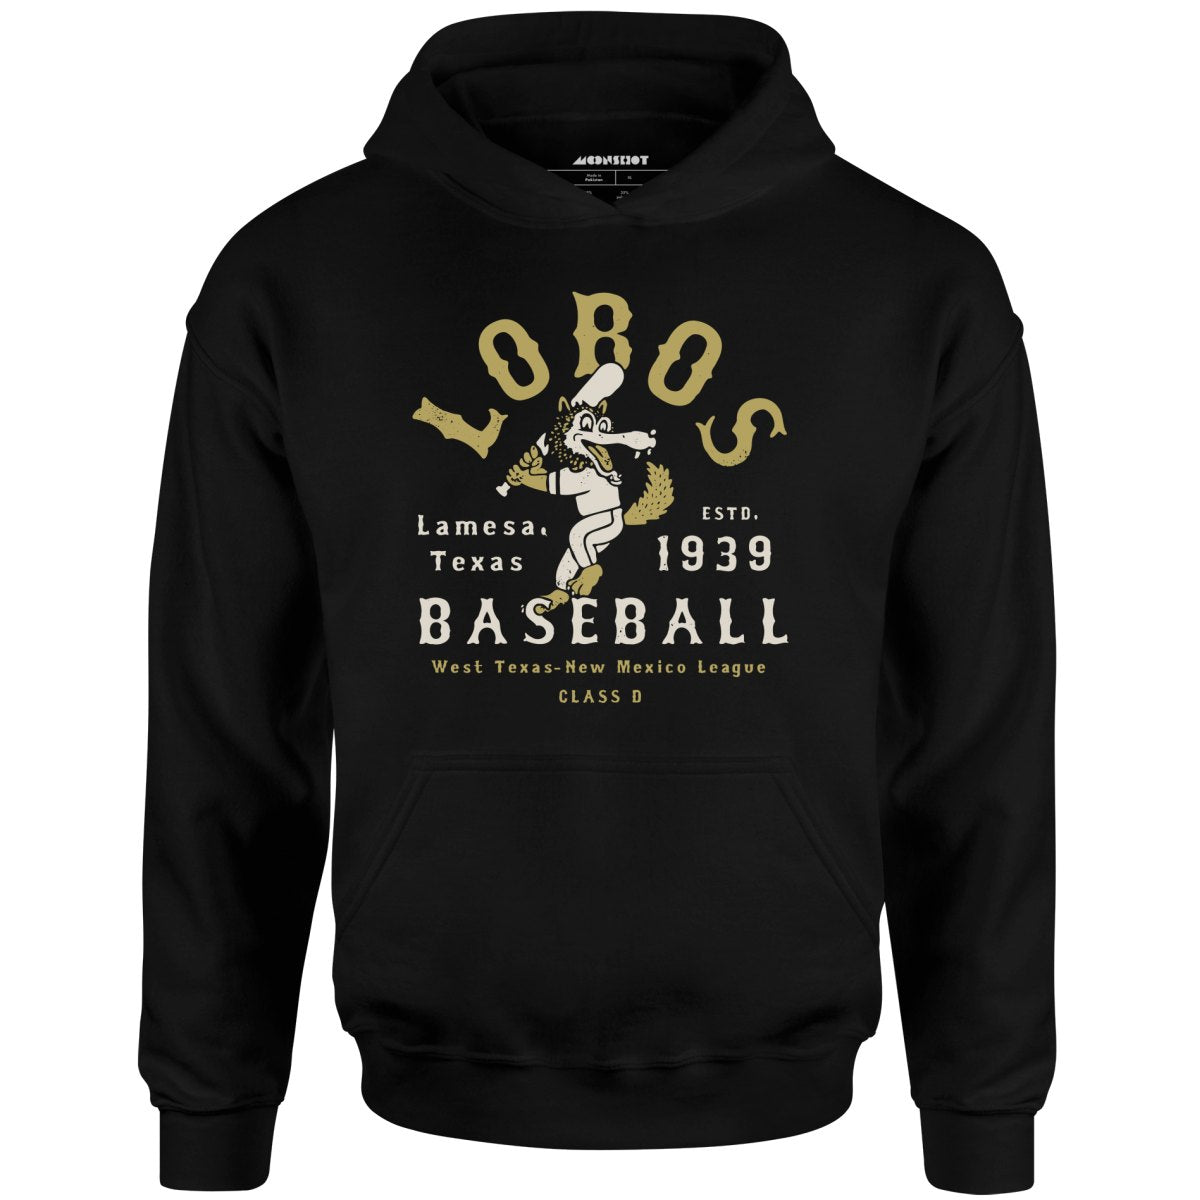 Lamesa Lobos - Texas - Vintage Defunct Baseball Teams - Unisex Hoodie